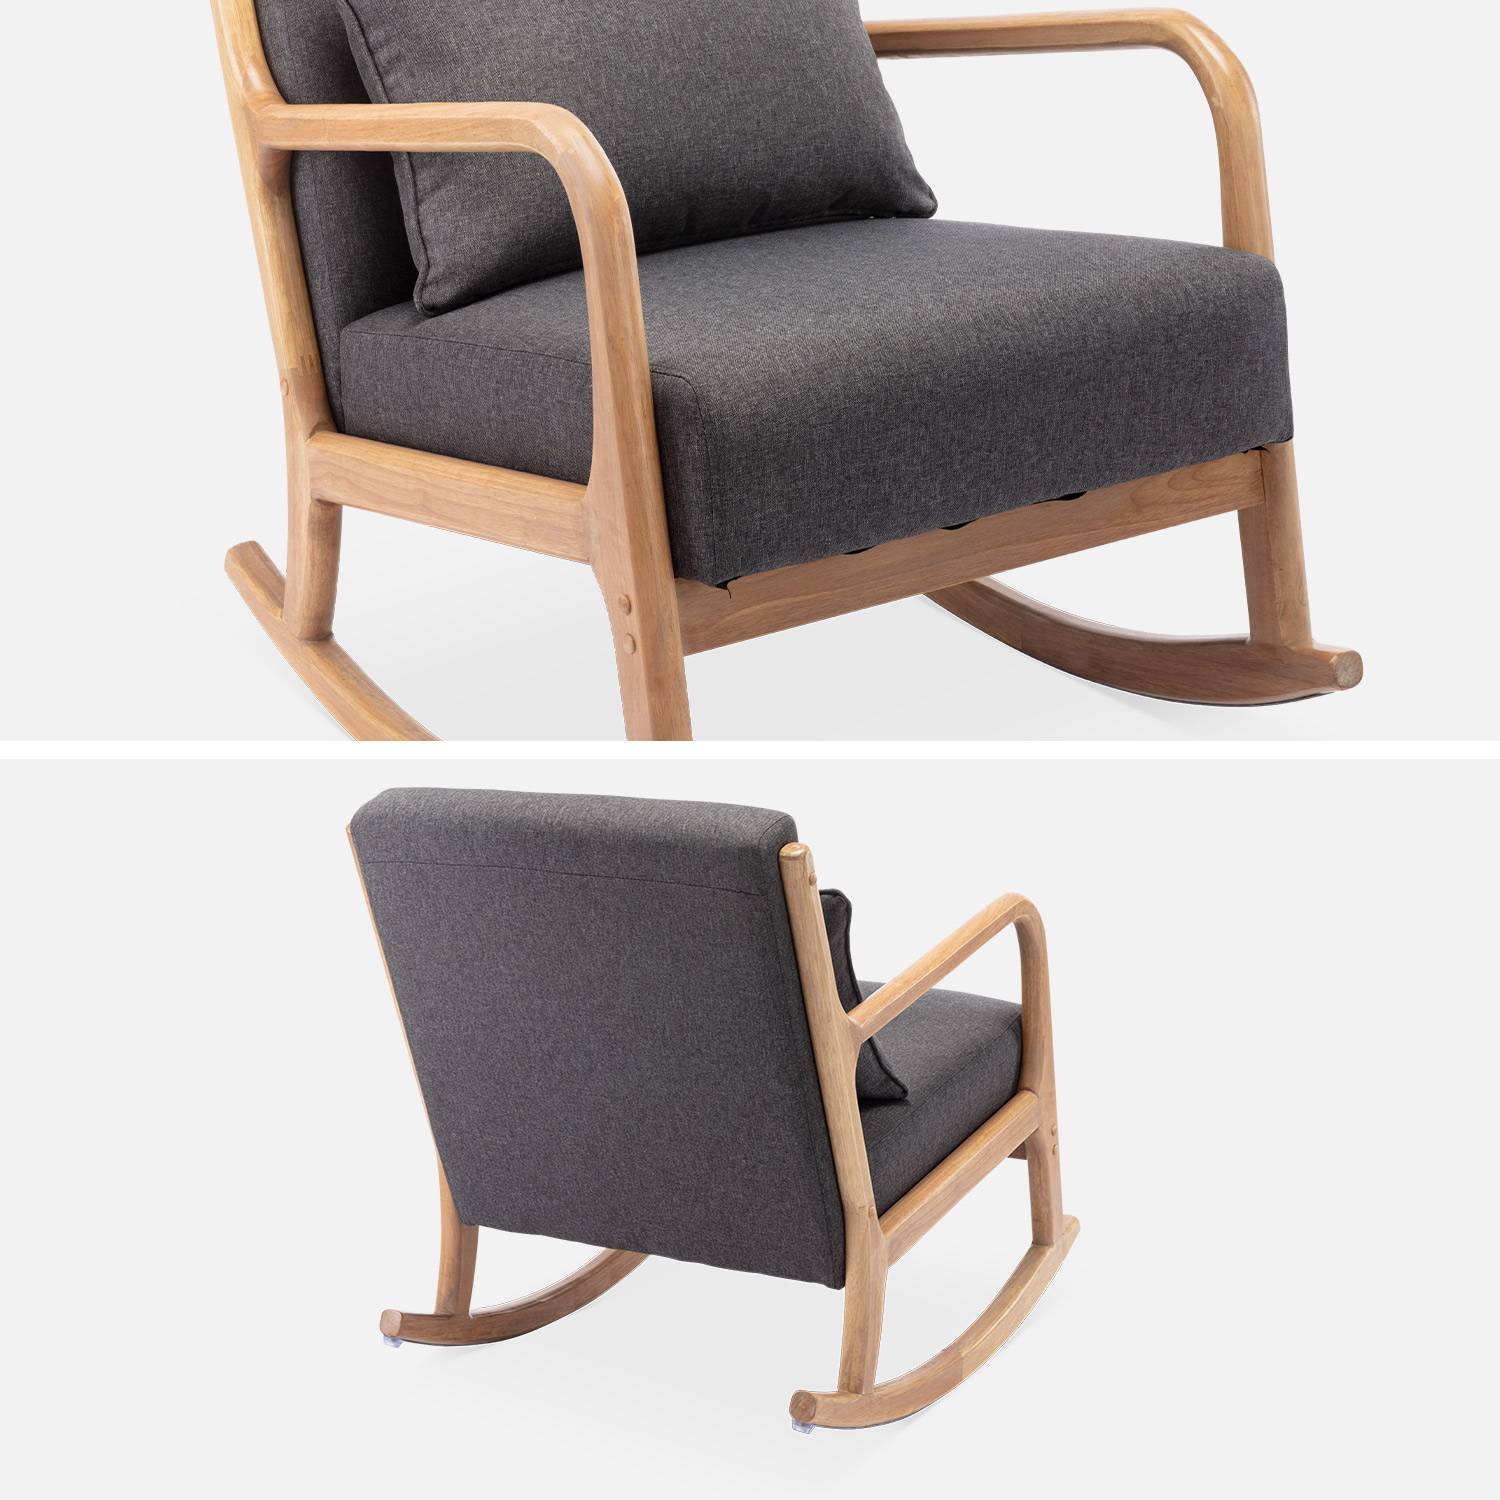 Fauteuil à bascule design en bois et tissu, 1 place, rocking chair scandinave, gris foncé Photo7